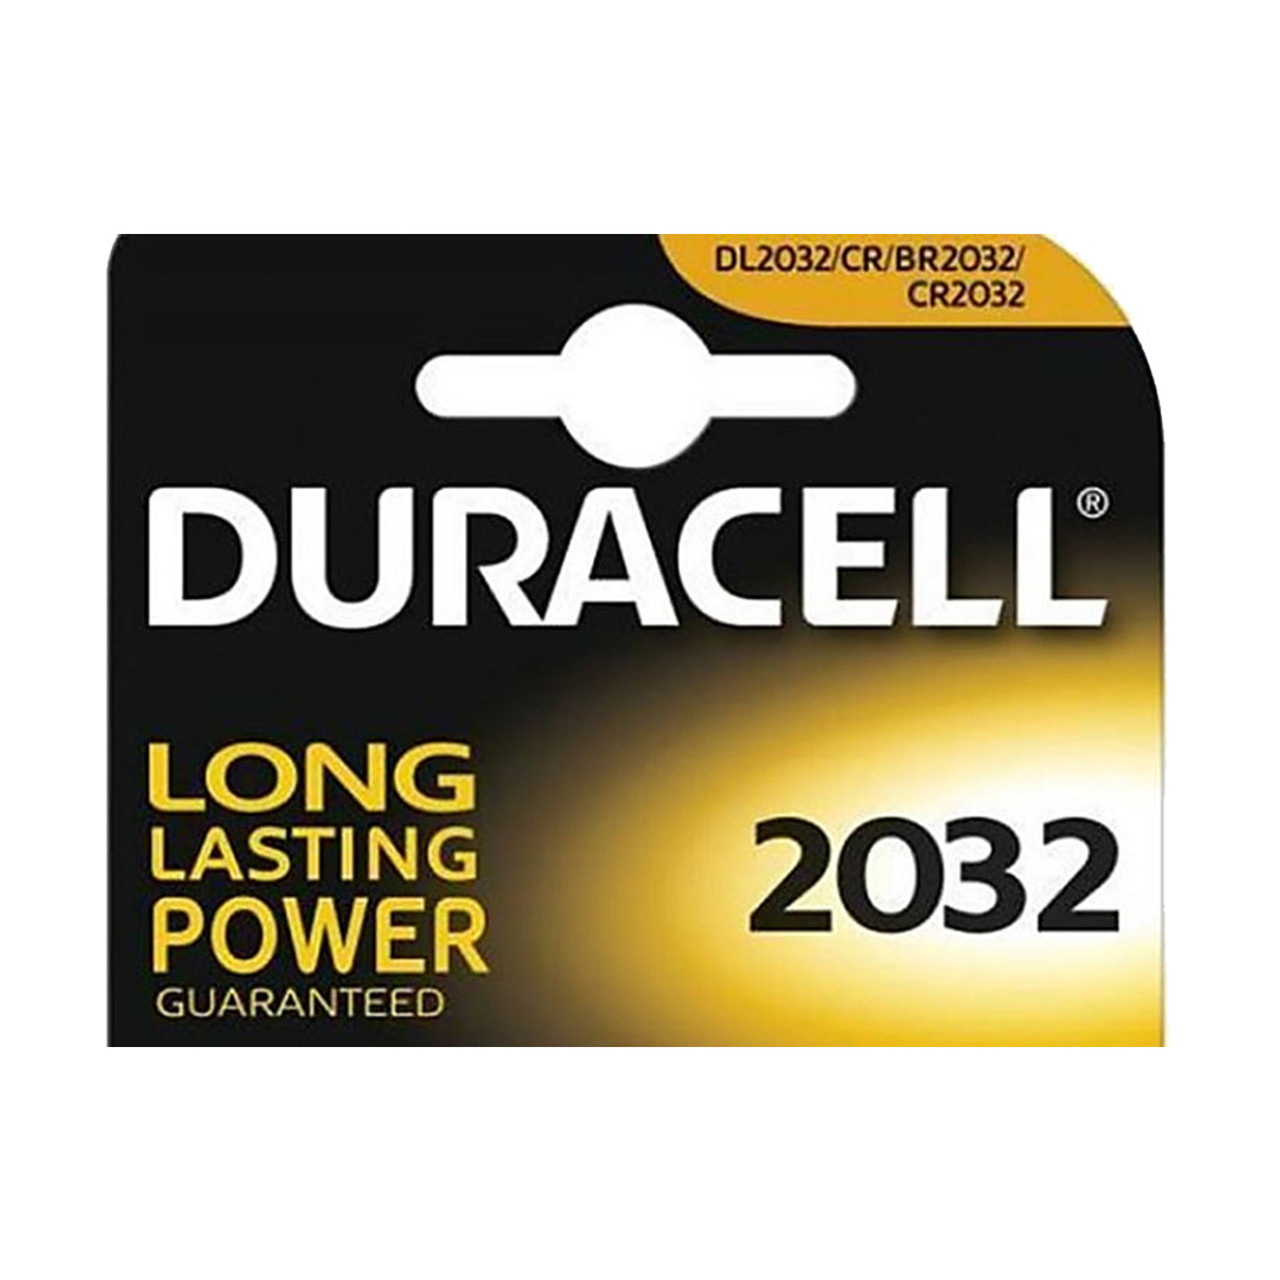 DURACELL Cr 2032 Battery - DURACELL 